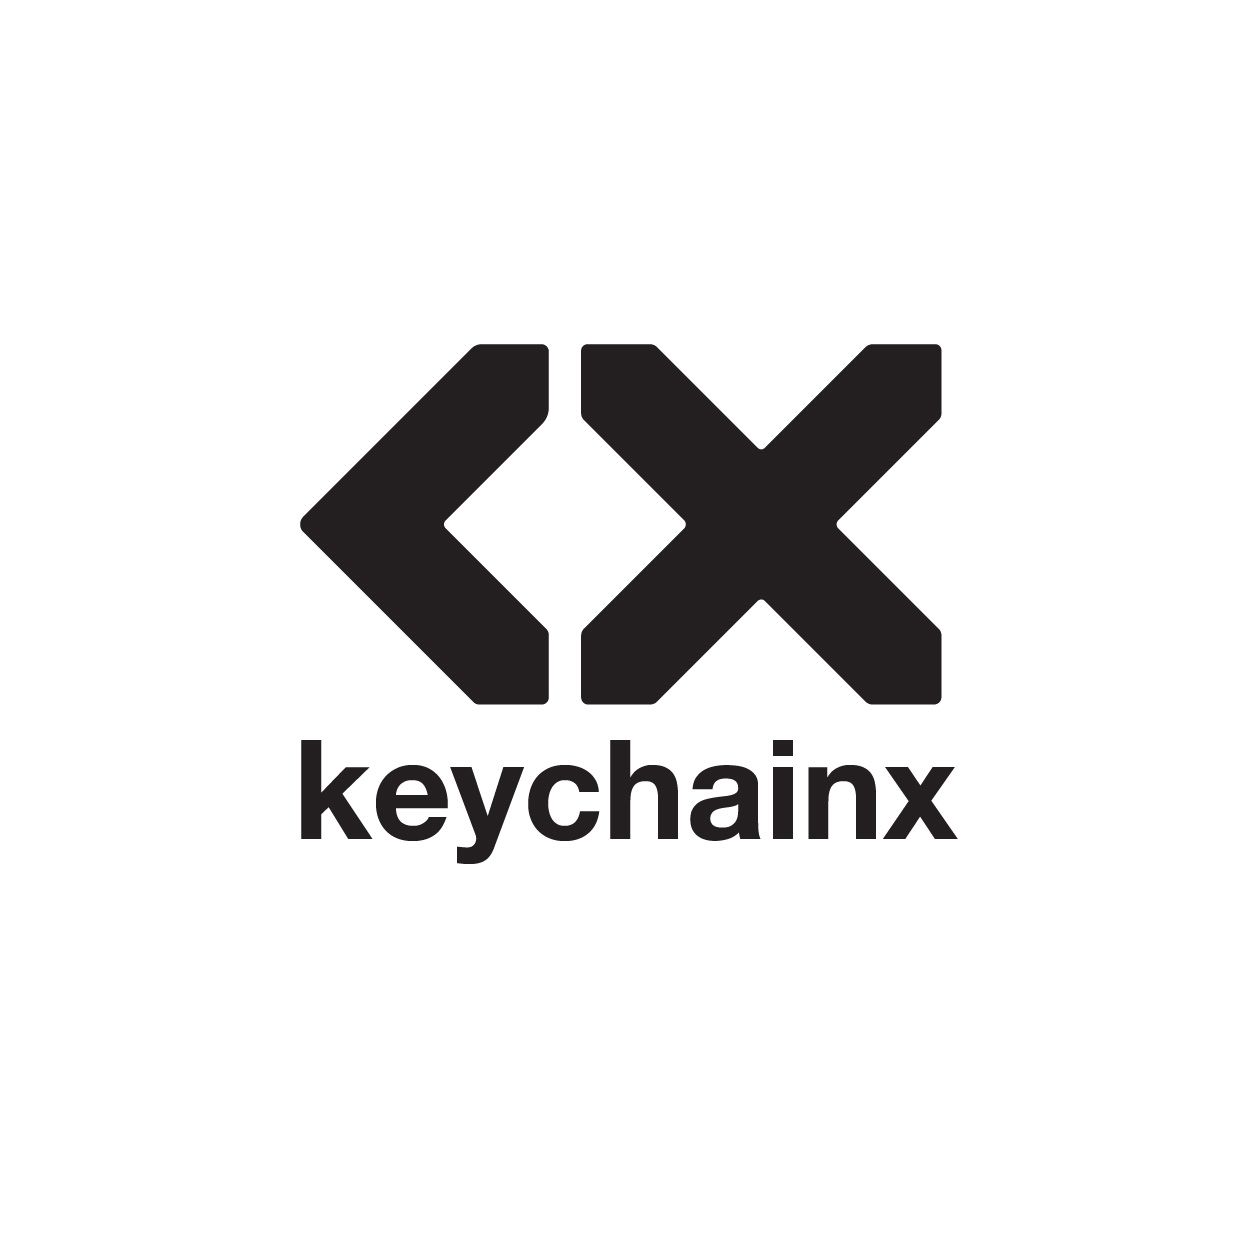 Logotyp KeyChainx - projektowanie logotypów portfolio